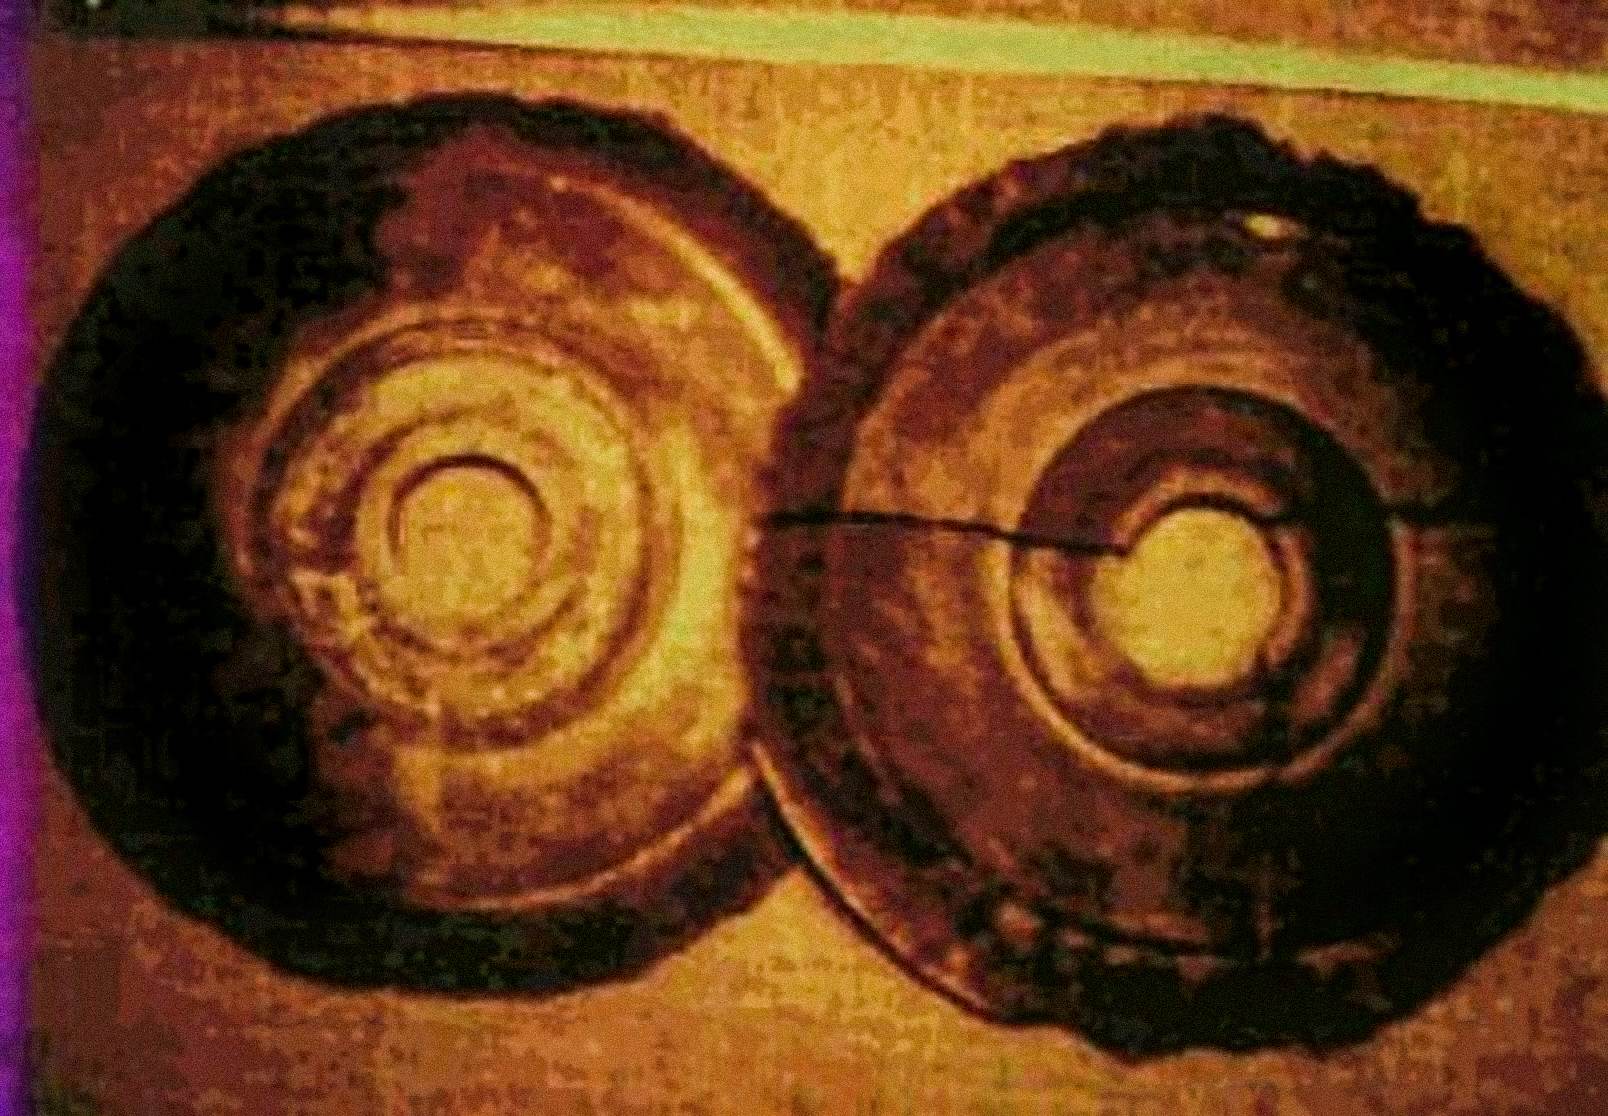 En 1974, Ernst Wegerer, un ingénieur autrichien, a photographié deux disques qui répondaient aux descriptions des Dropa Stones. Il participait à une visite guidée du Banpo-Museum à Xian, lorsqu'il a vu les disques de pierre exposés. Il prétend avoir vu un trou au centre de chaque disque et des hiéroglyphes dans des rainures en forme de spirale partiellement émiettées.